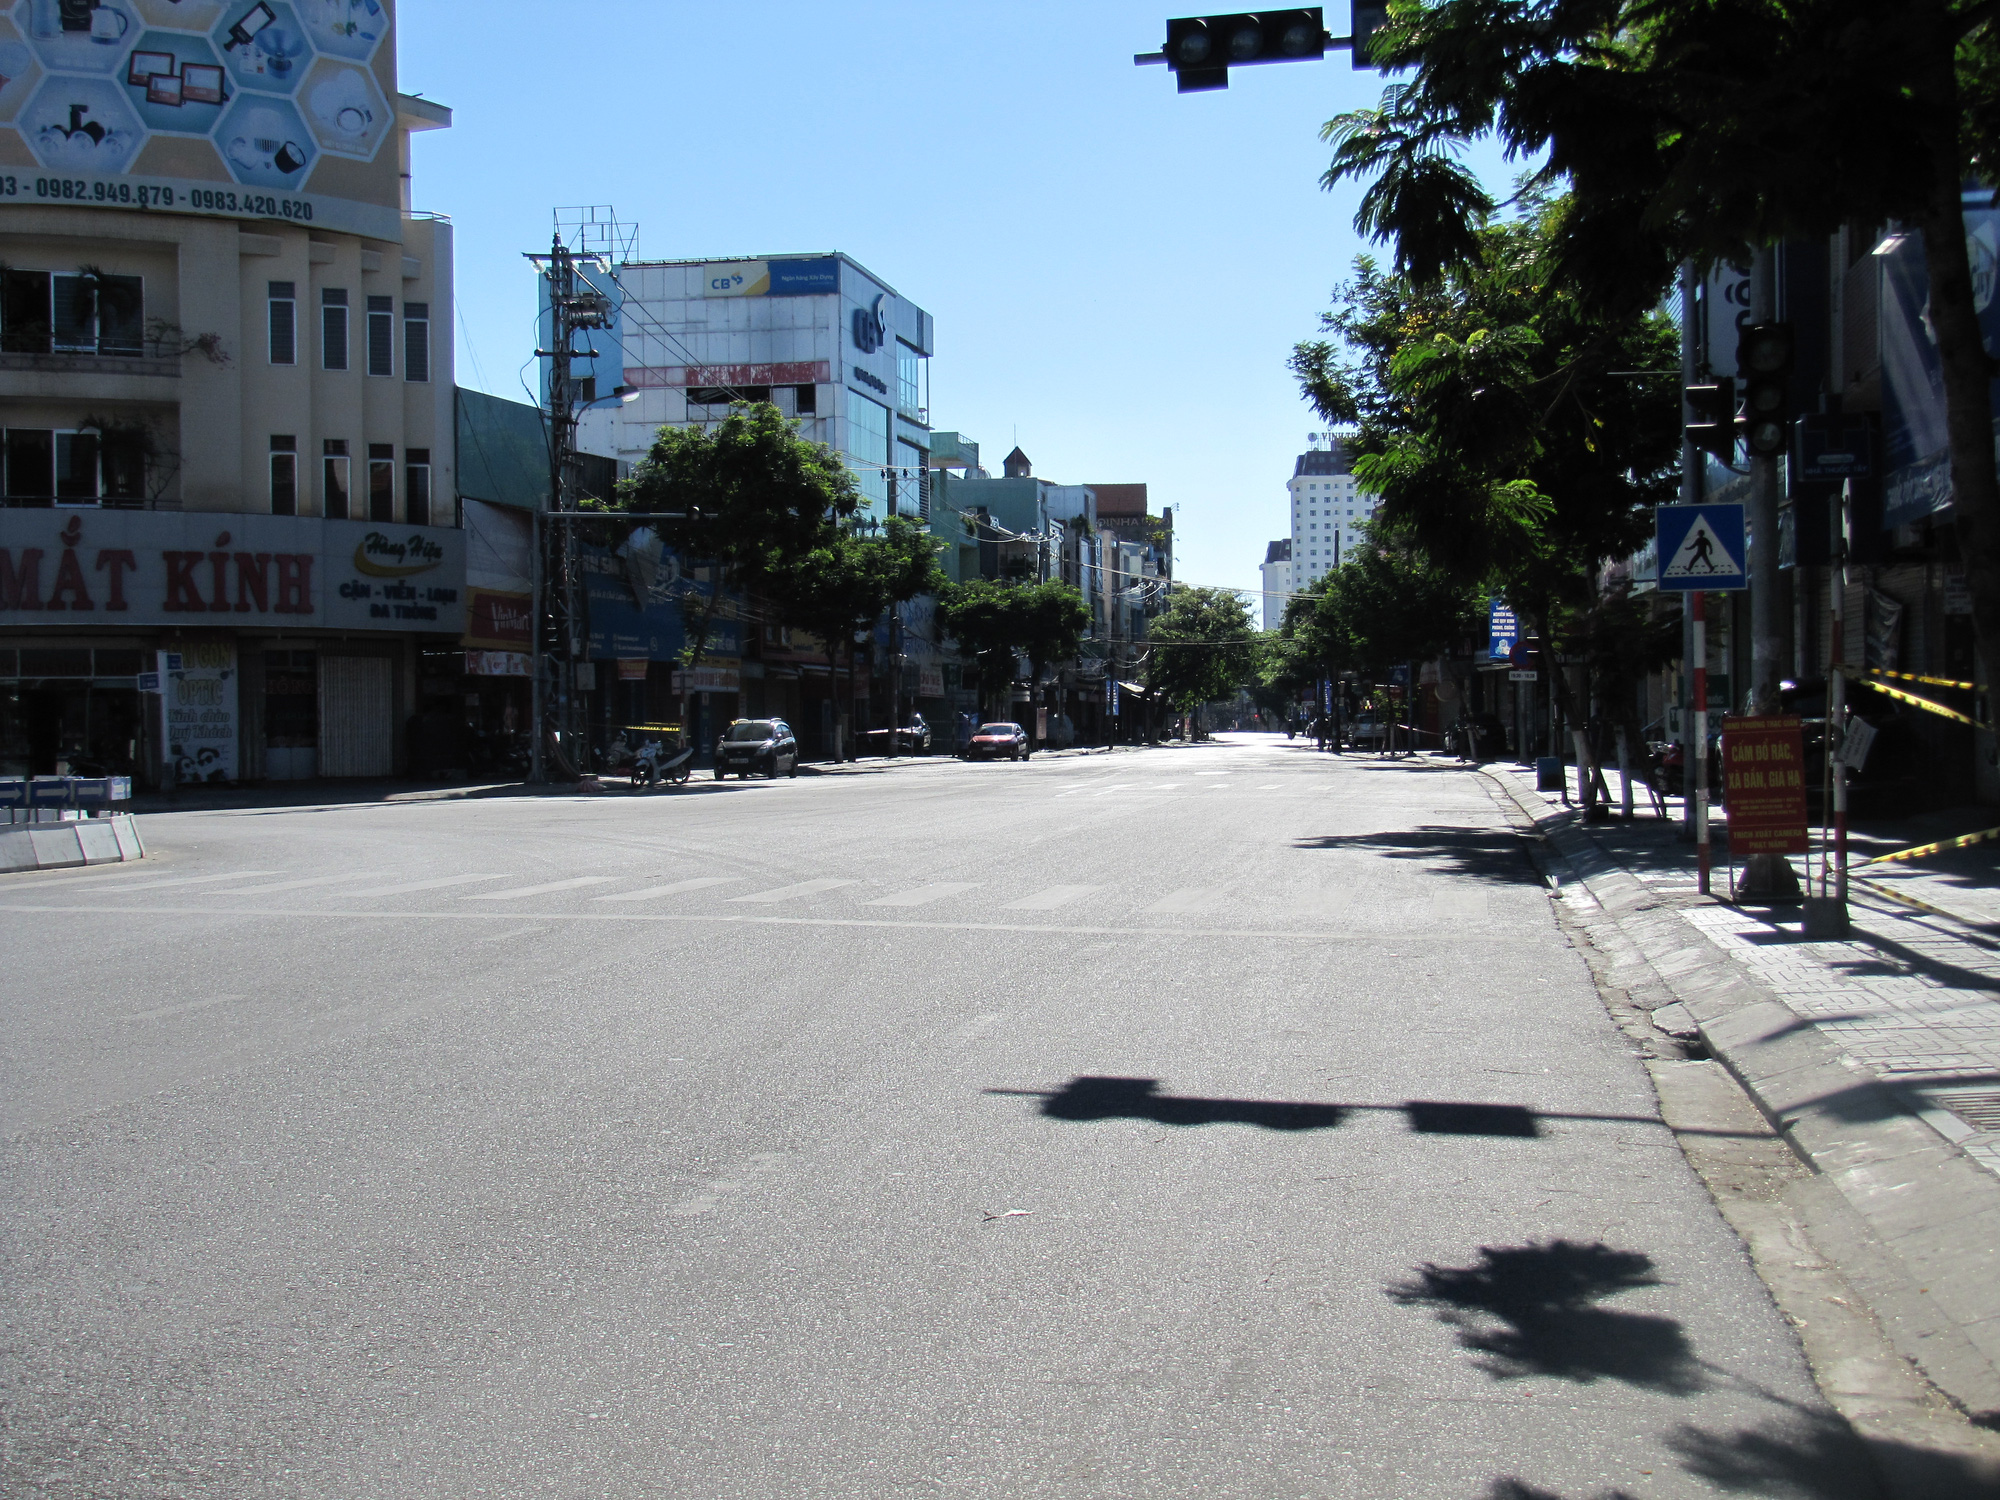 Hình ảnh đường phố Đà Nẵng vắng tanh sẽ đưa bạn đến những vùng vắng đẹp và yên tĩnh, giúp bạn thoát ra khỏi những ồn ào của đời sống và giải tỏa căng thẳng.